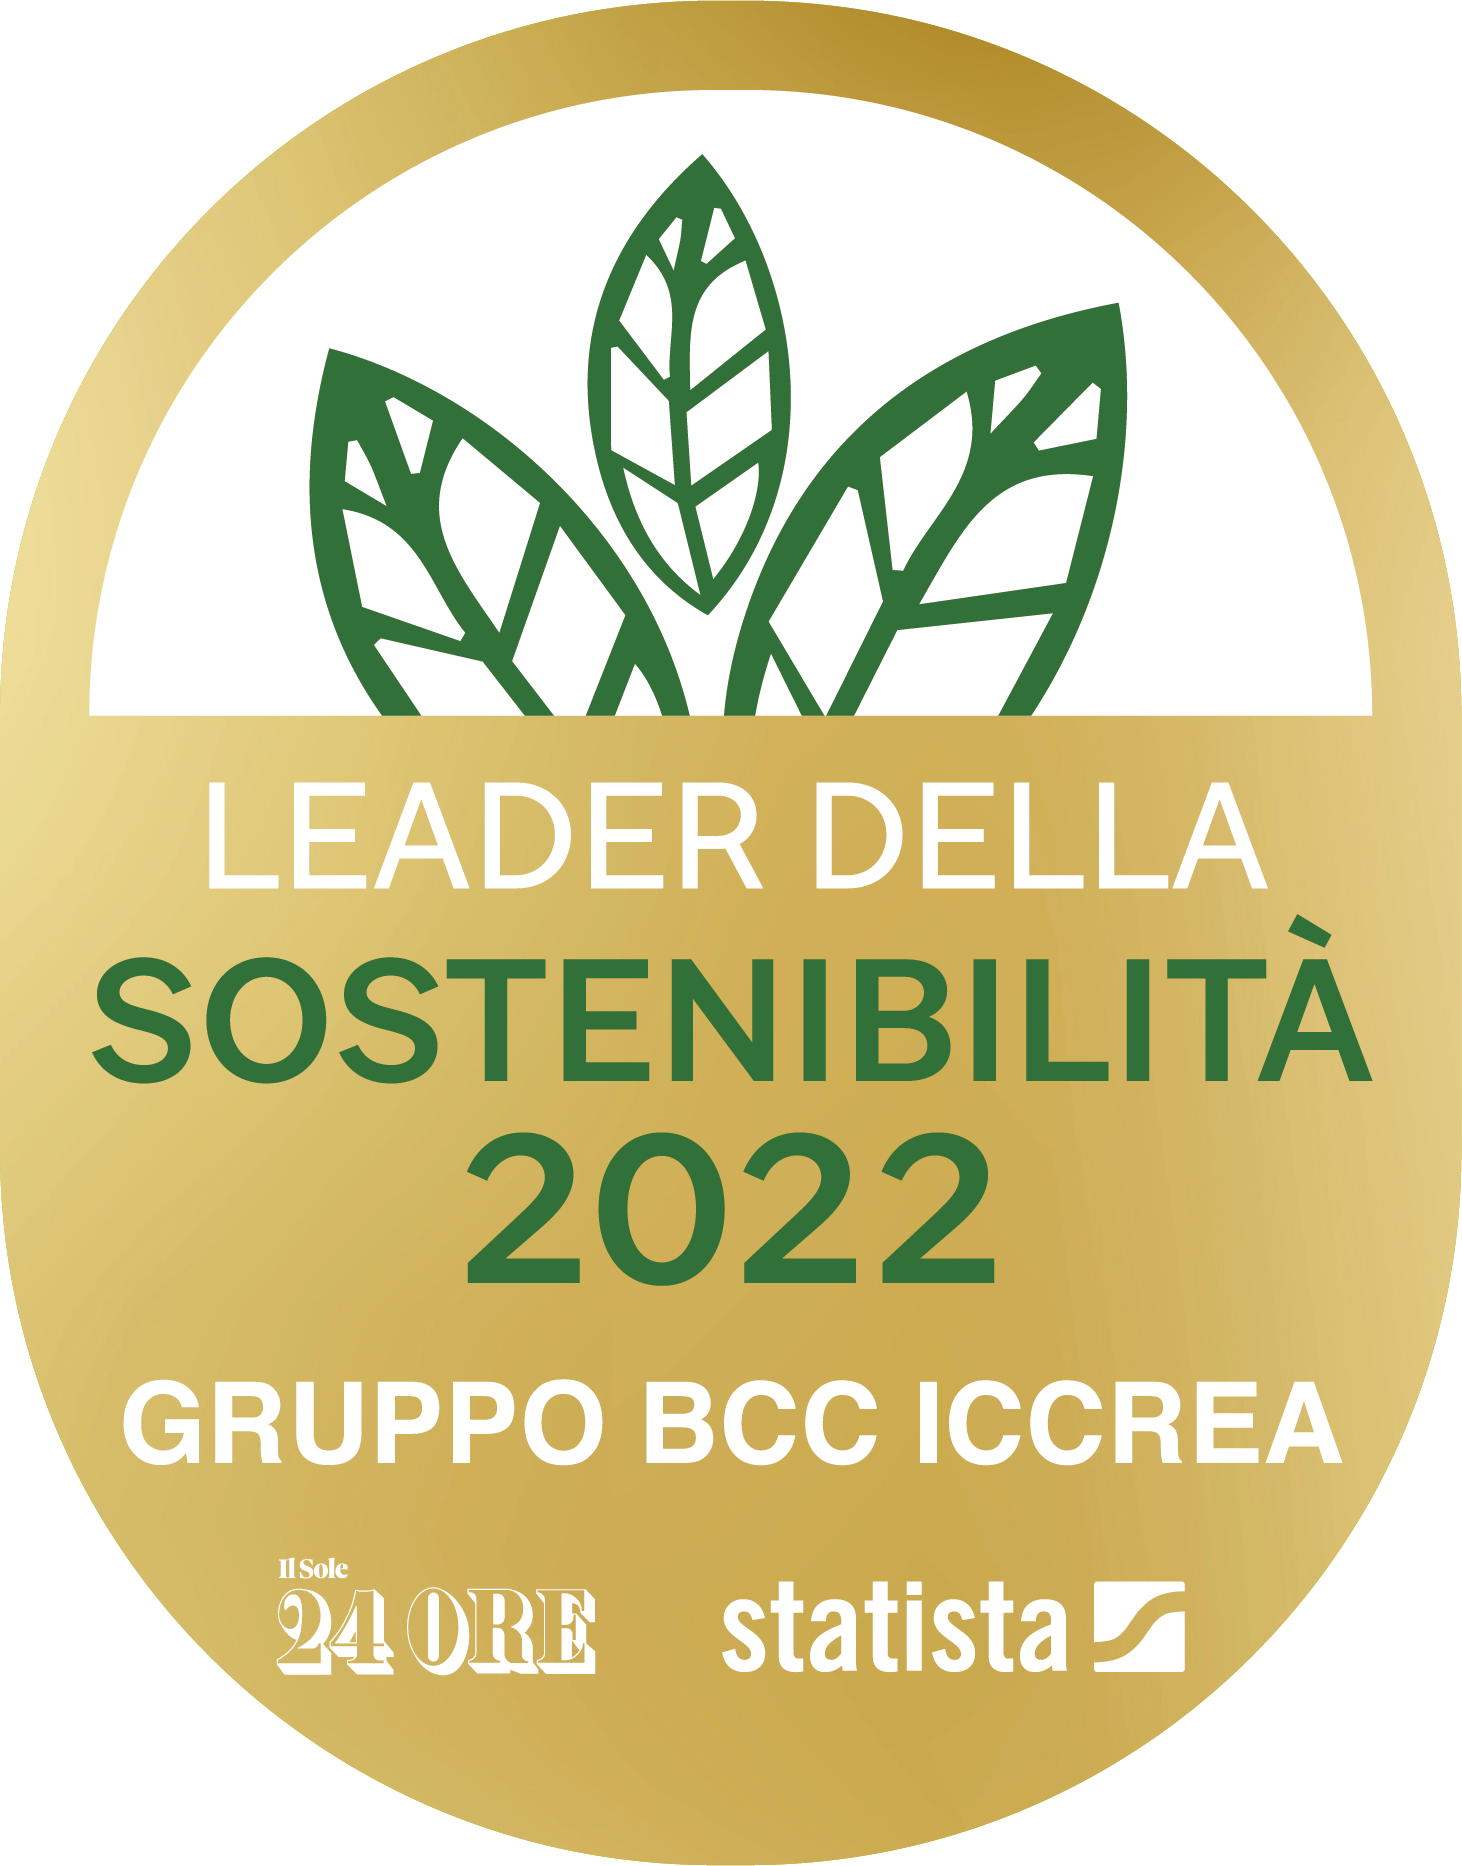 Il Gruppo BCC Iccrea si attesta Leader della sostenibilità 2022